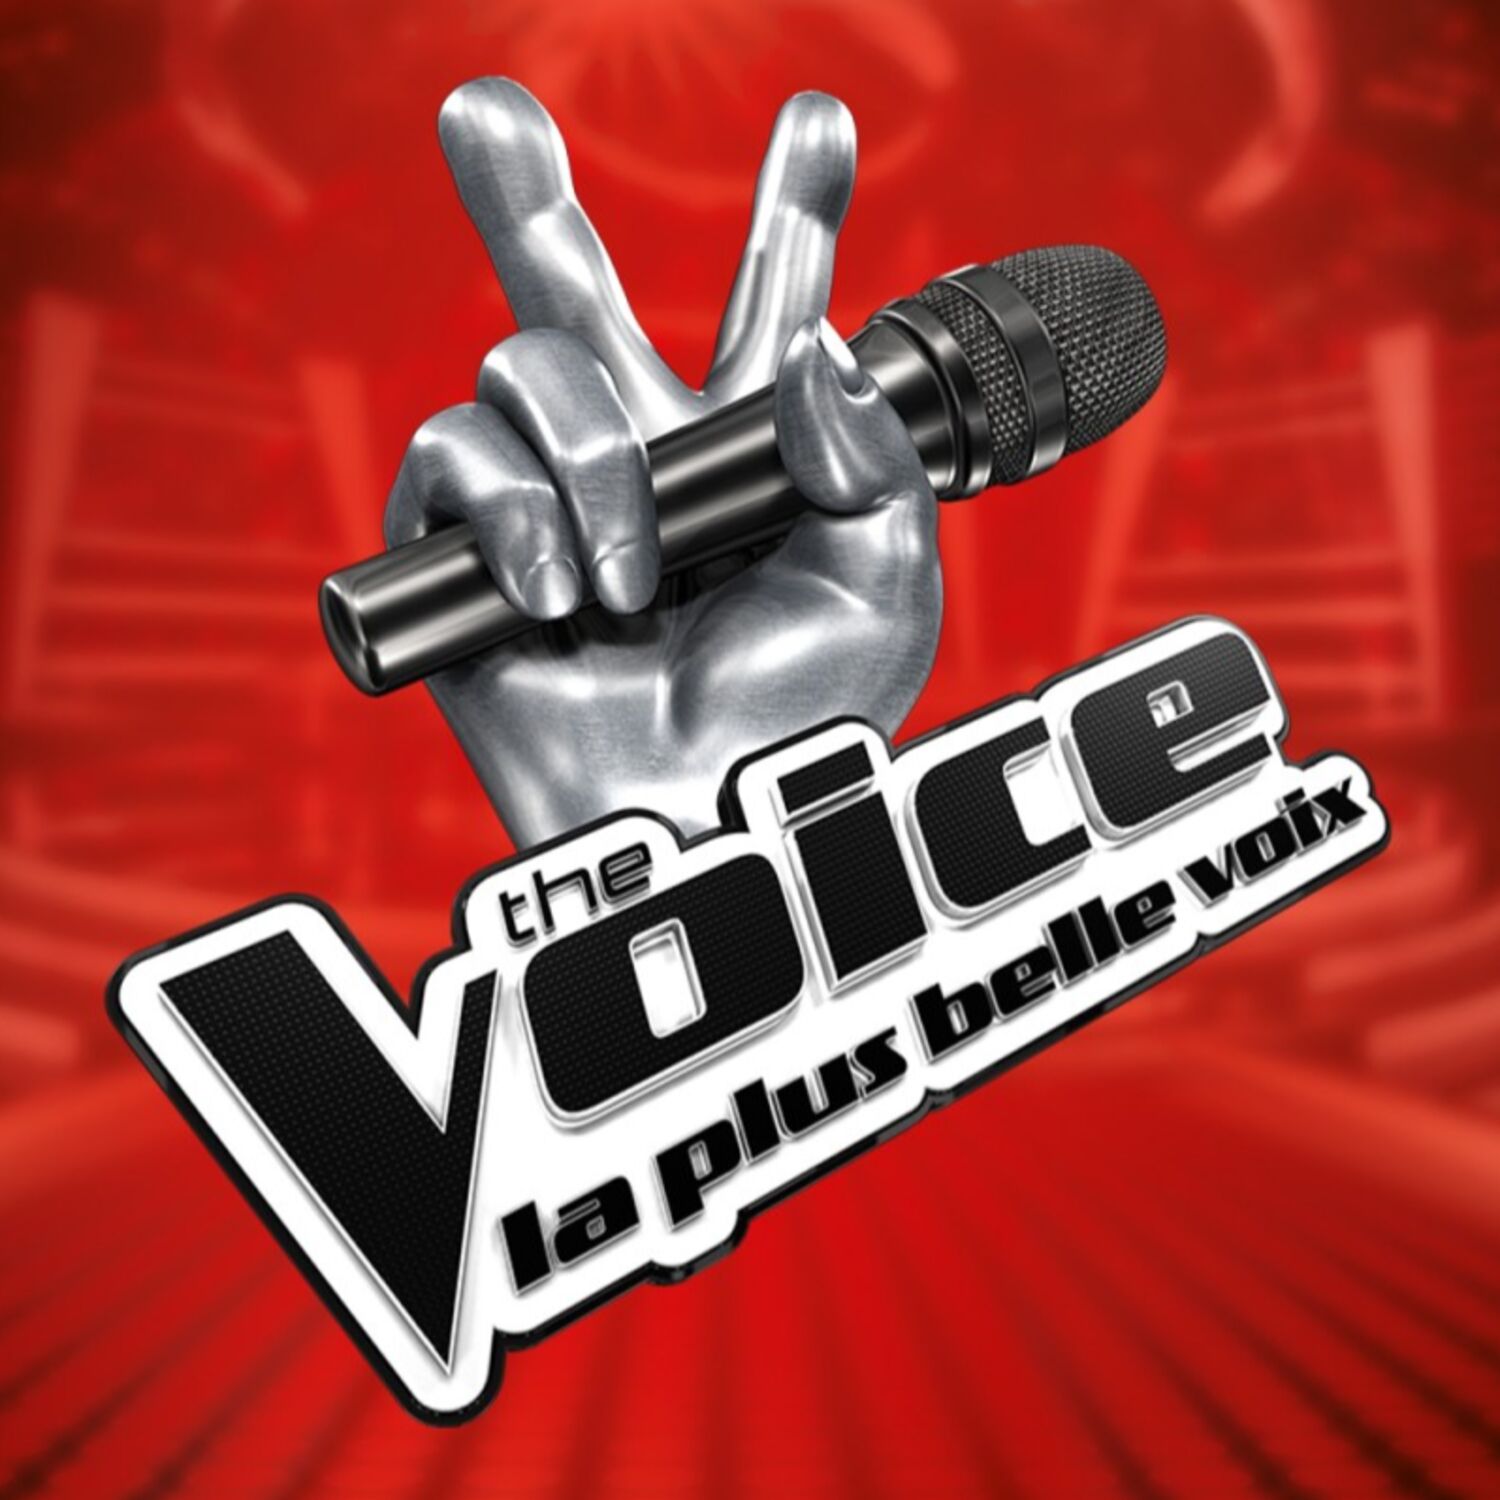 Le casting The Voice et The Voice Kids a lieu ce mercredi 2 mai à Dijon